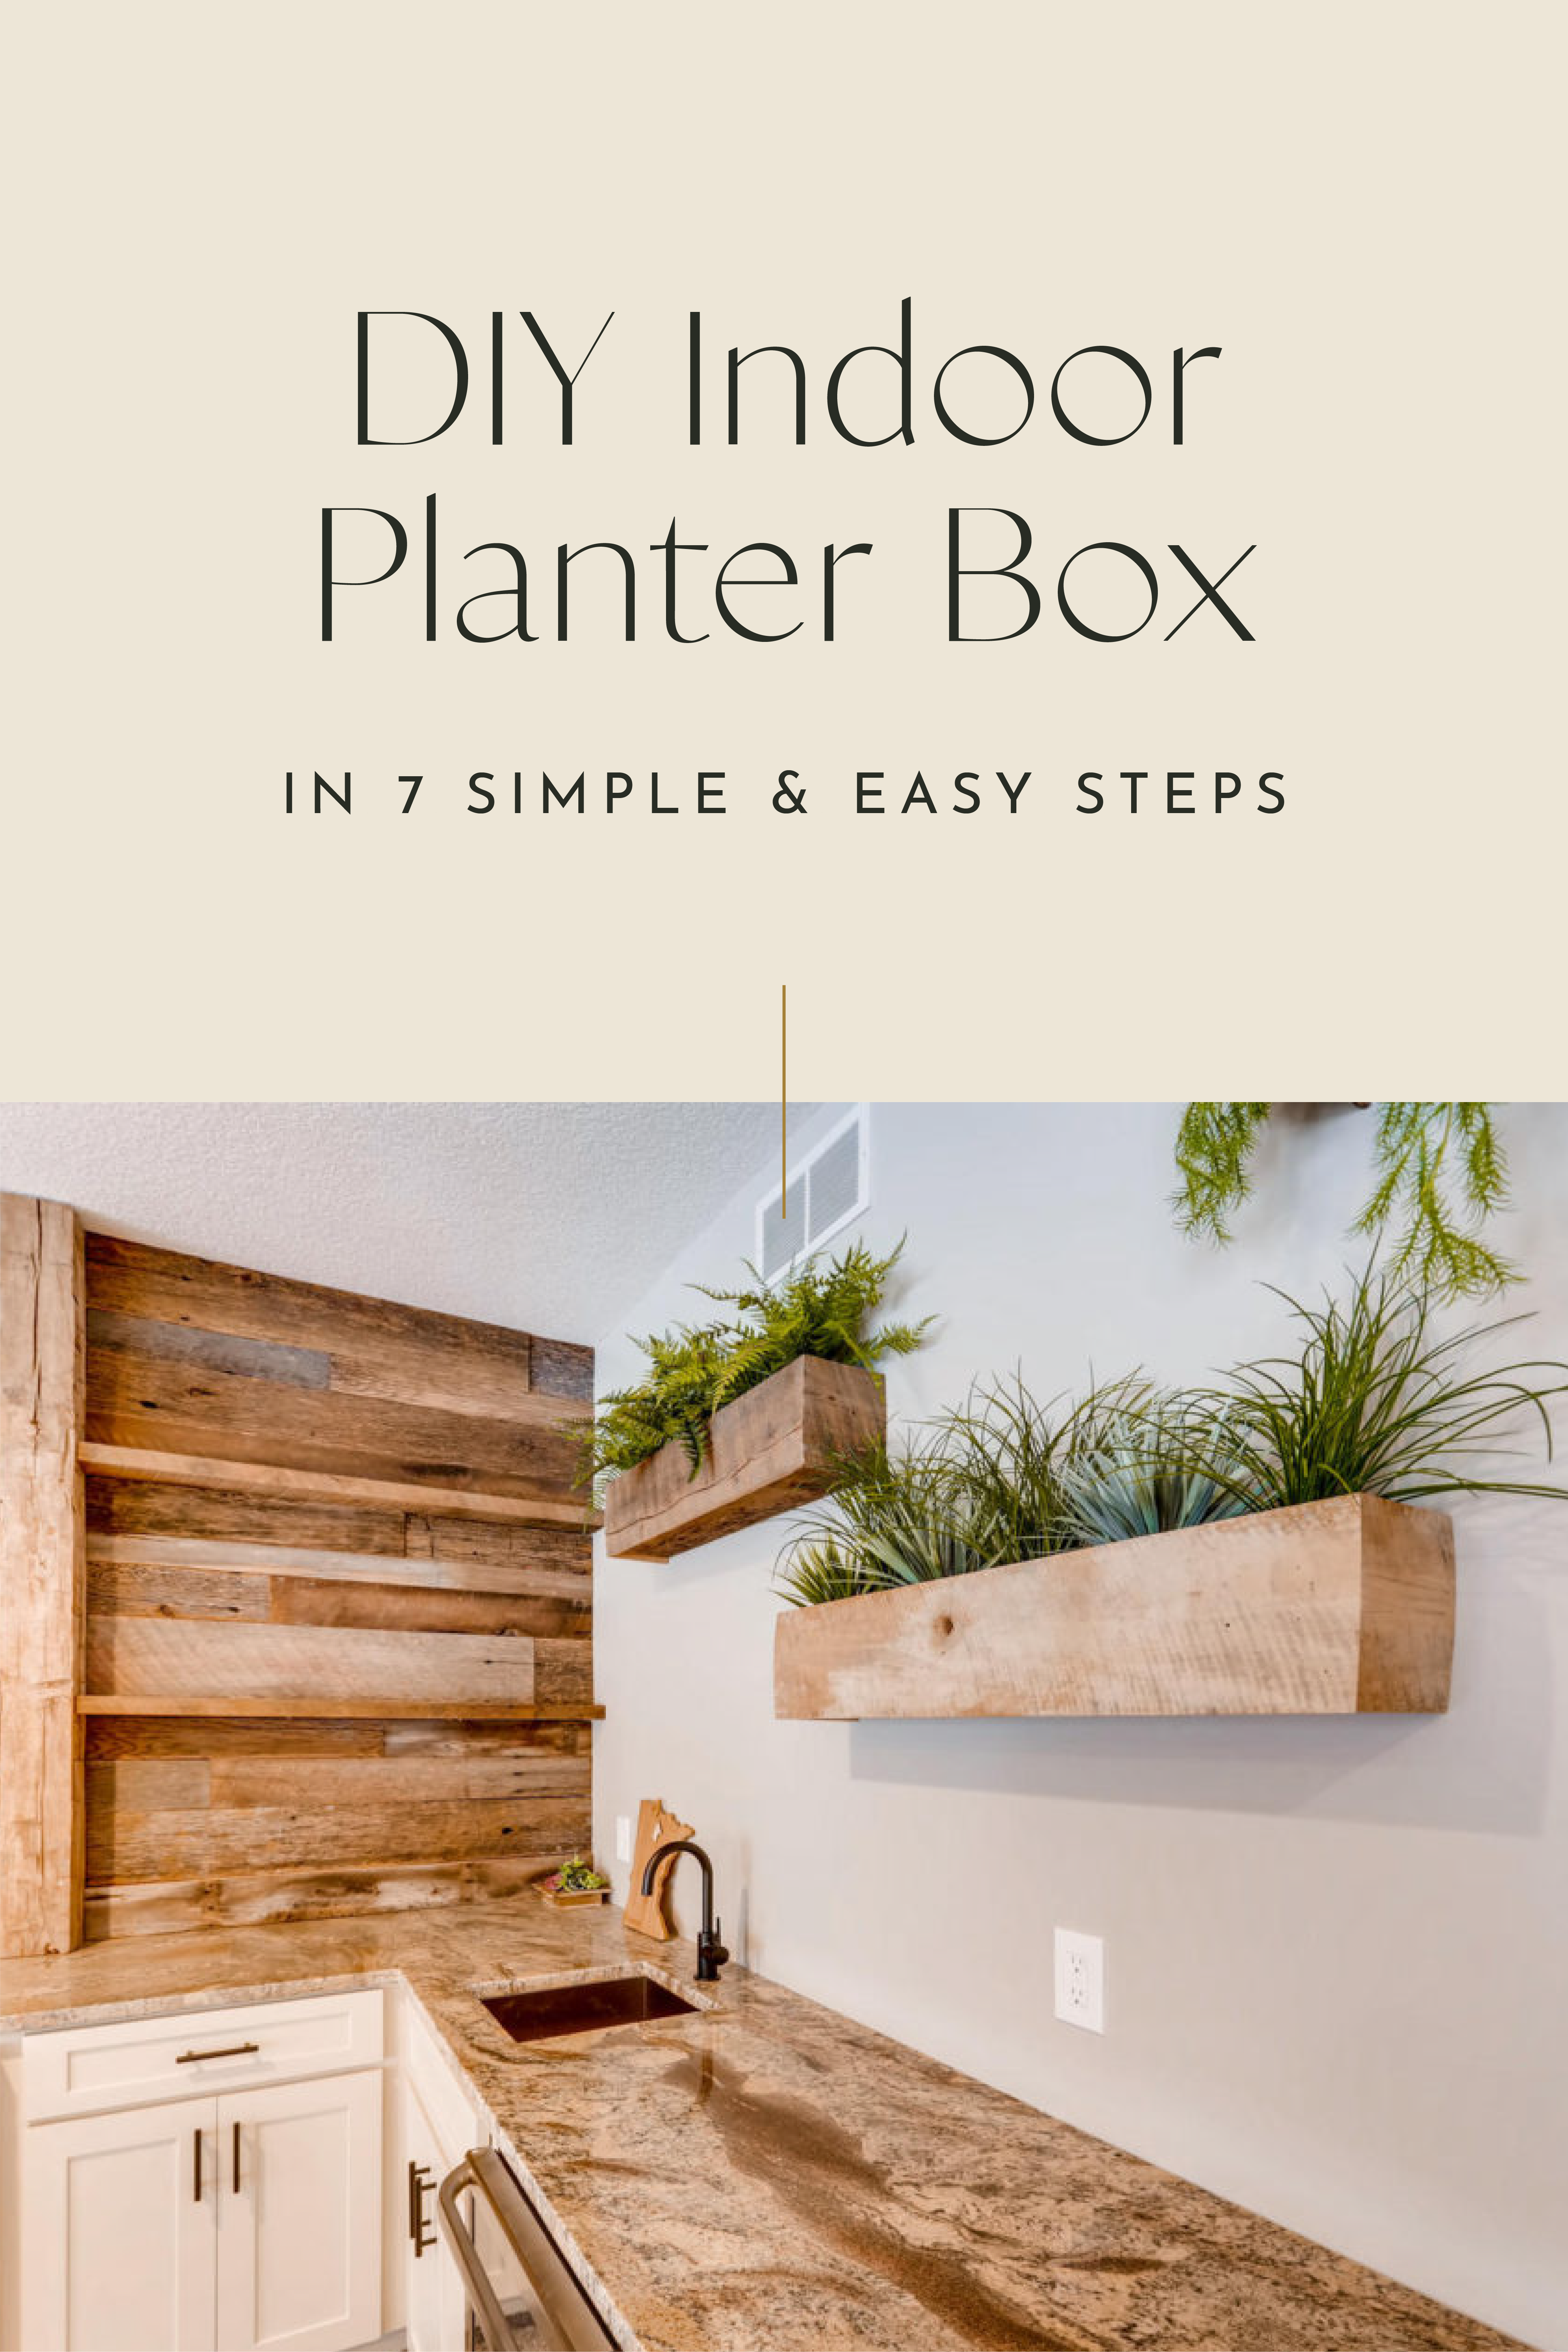 DIY Indoor Planter Box in 7 Simple, Easy Steps 2